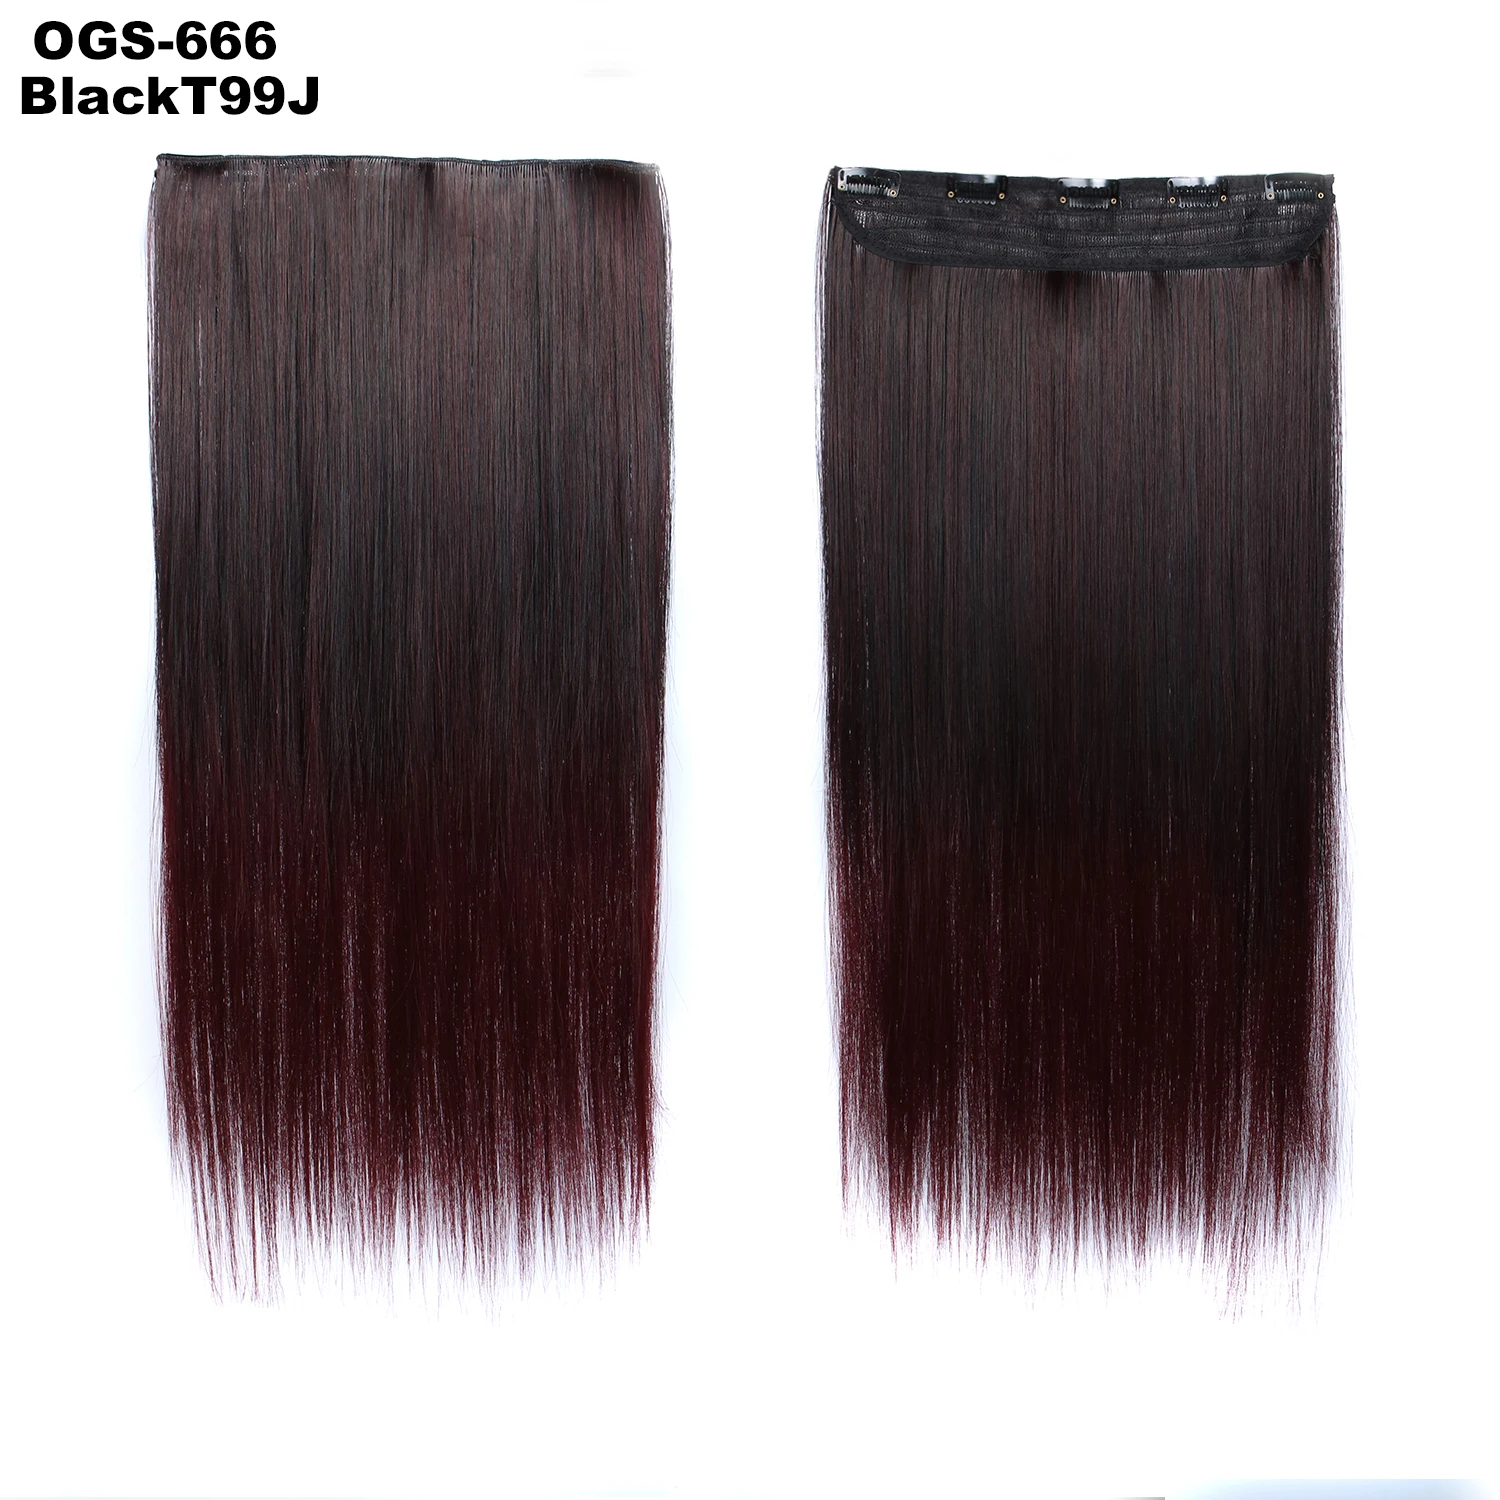 Similler, 100 г, 60 см, длинные прямые вьющиеся женские волосы на заколках, черные, коричневые, высокая температура, синтетические волосы, Омбре, чистые